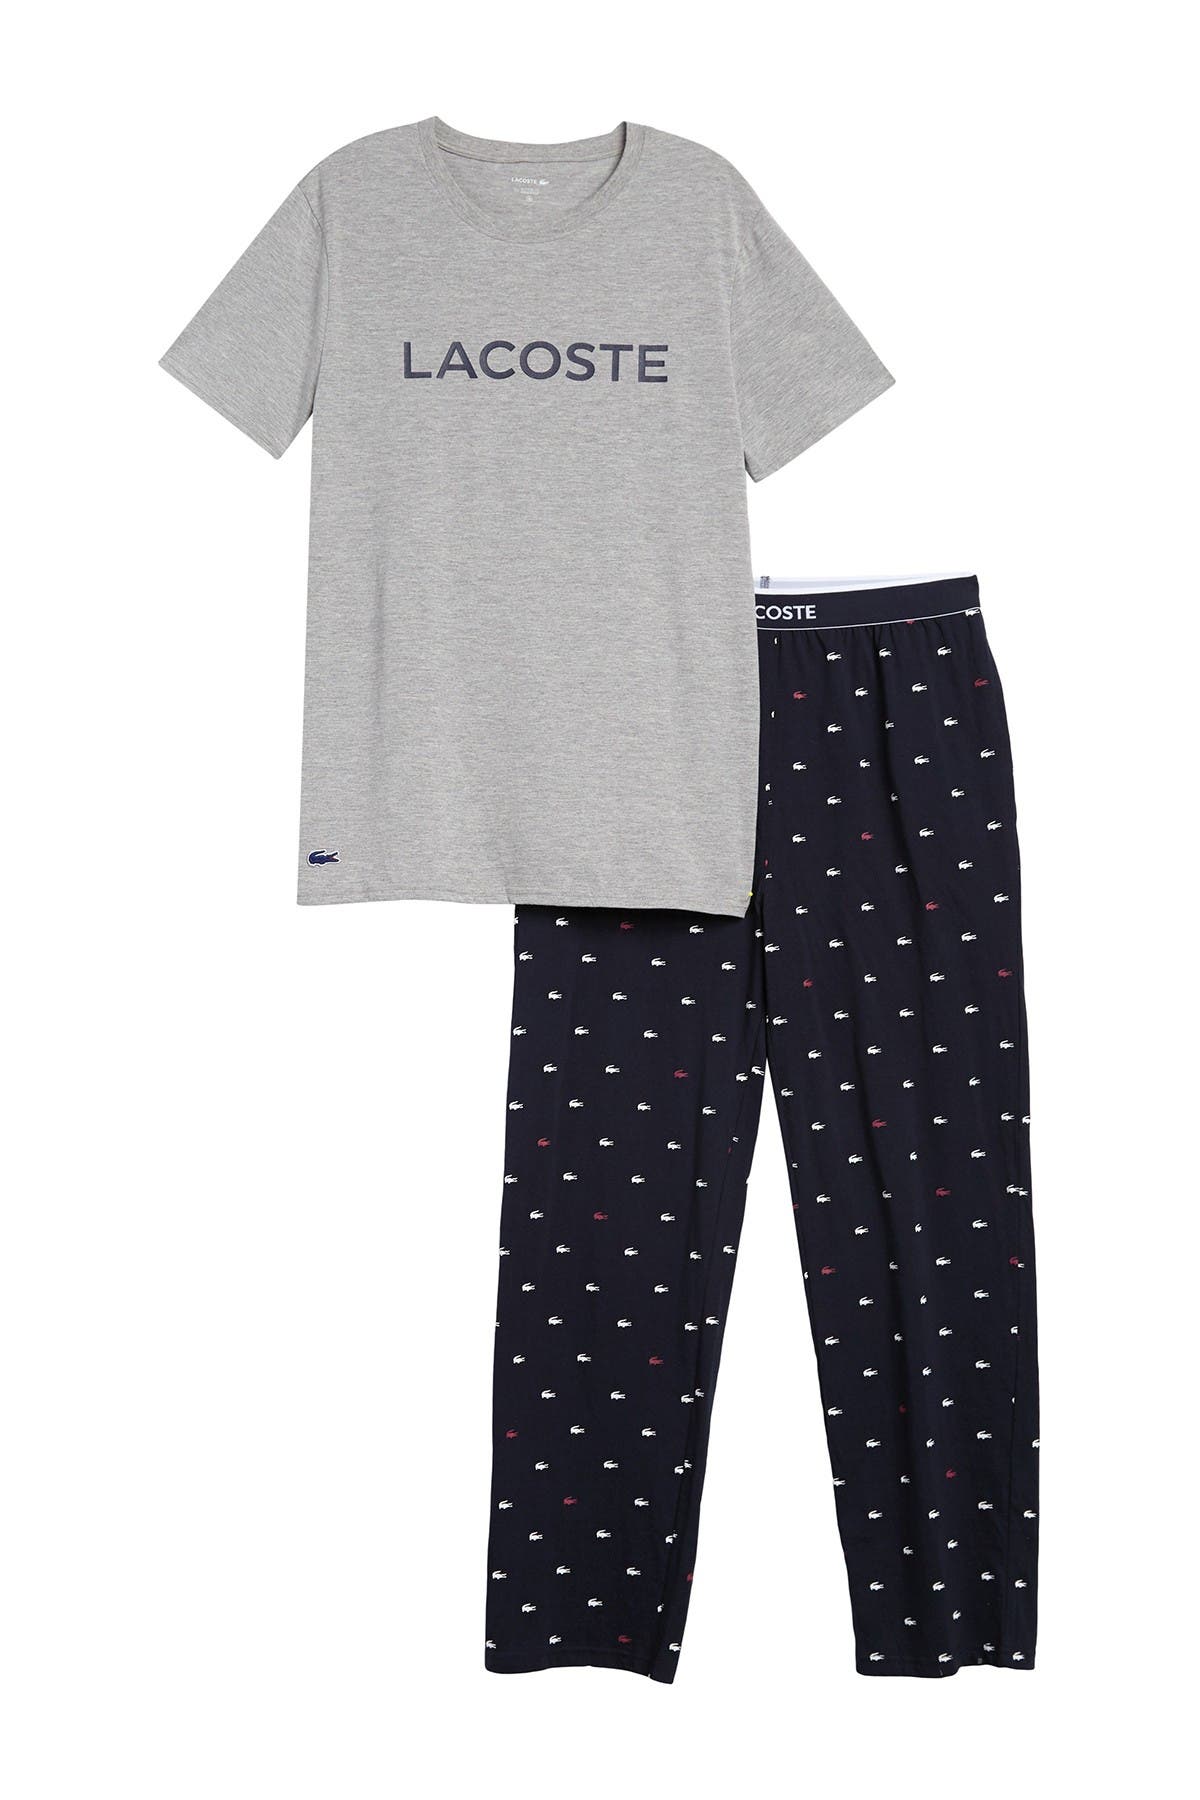 lacoste nightwear